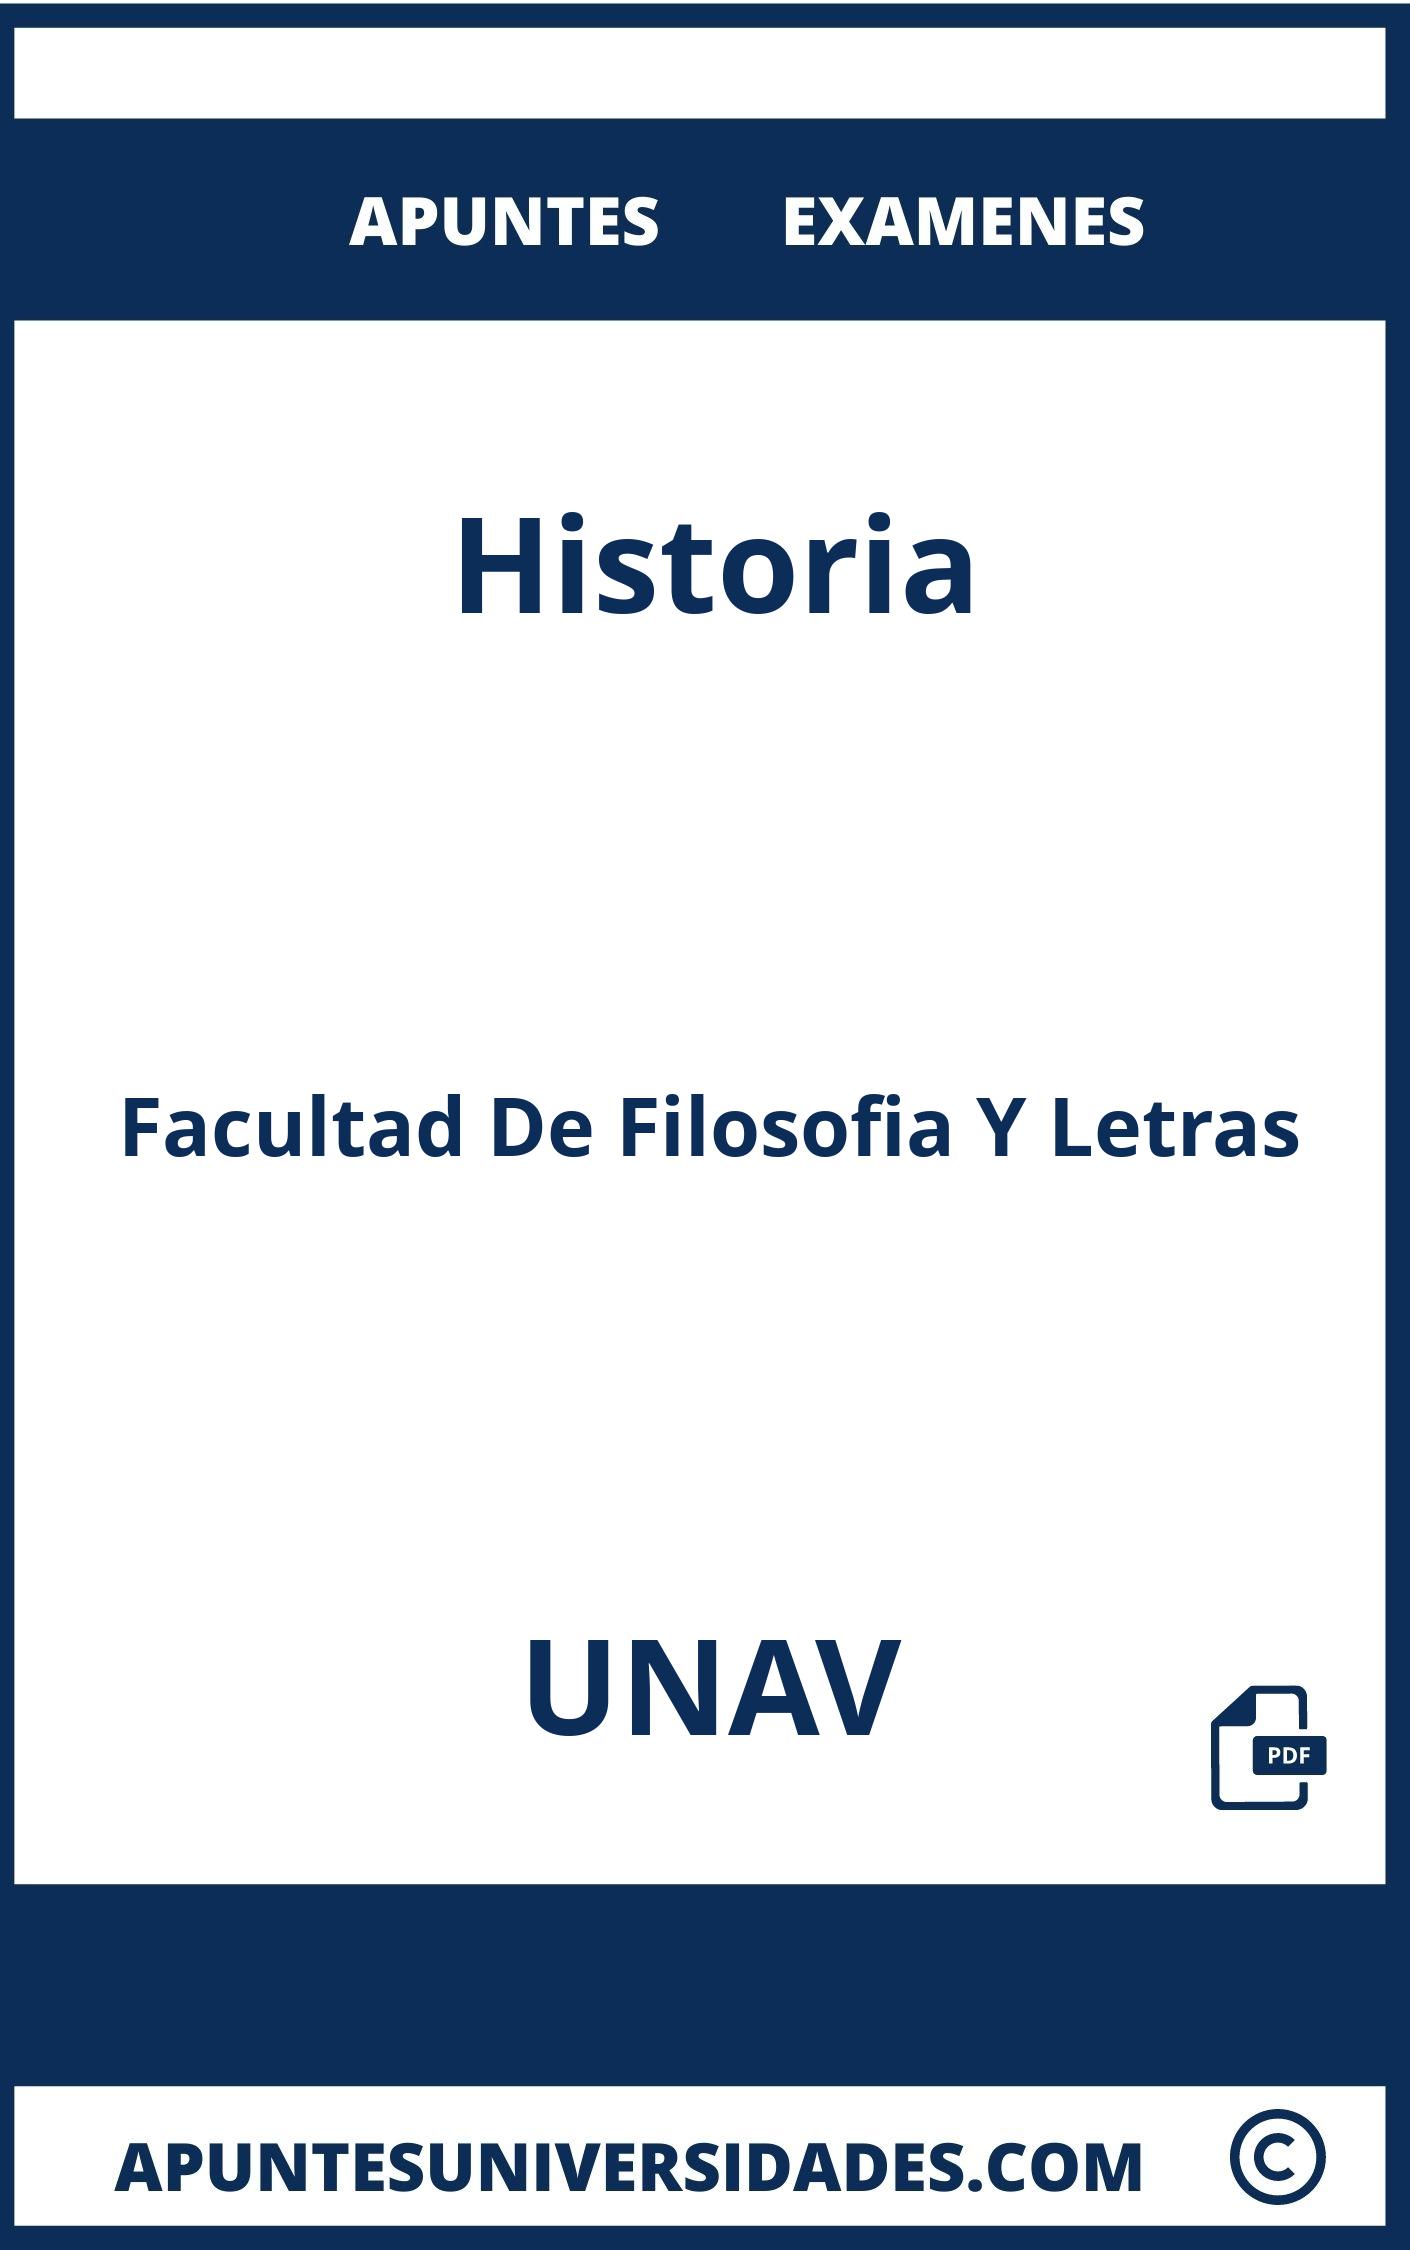 Examenes y Apuntes de Historia UNAV